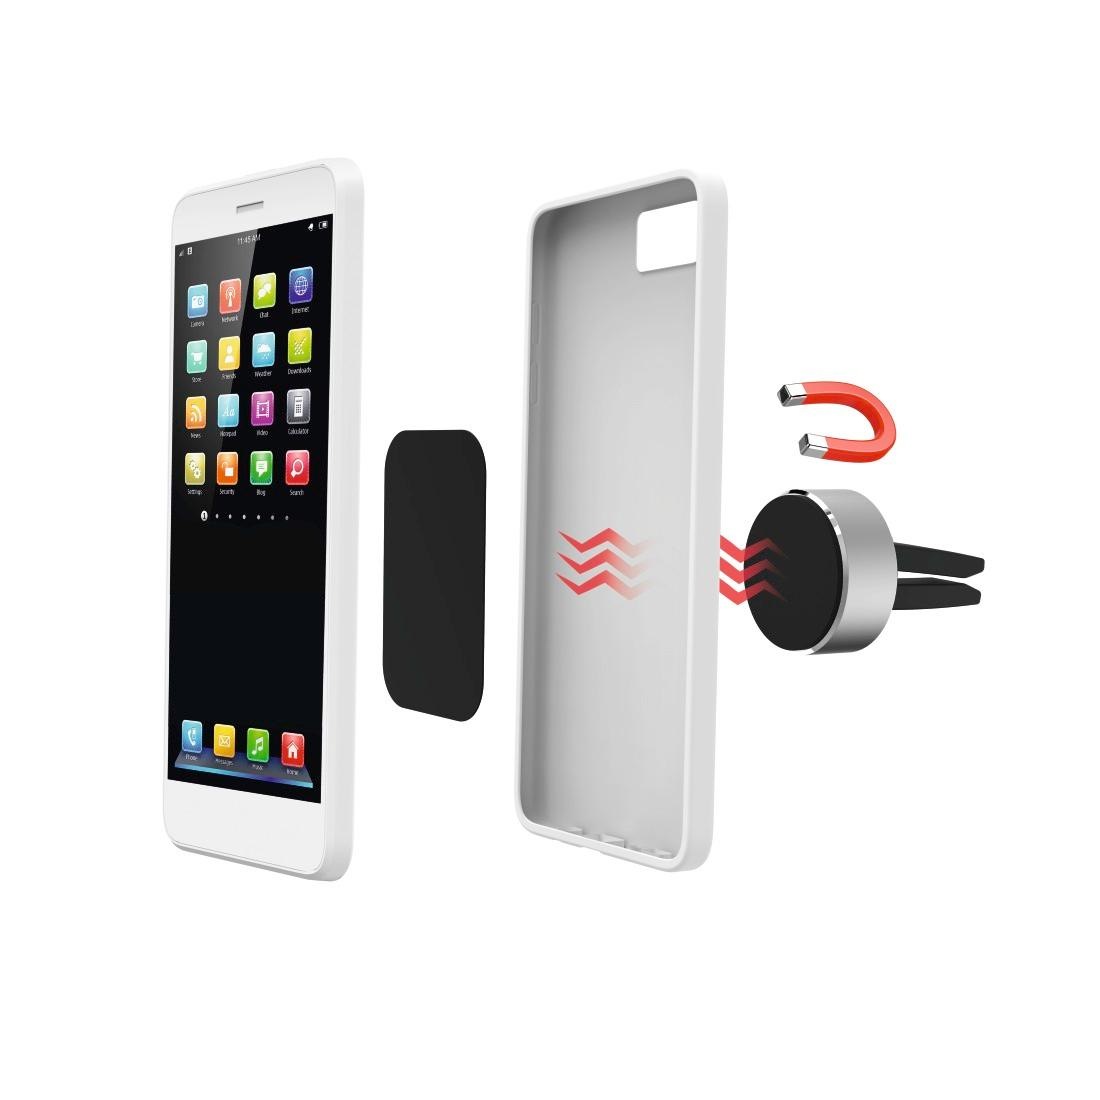 Belkin iPhone Halter mit MagSafe für MacBooks, Kunststoff/Metall, weiß